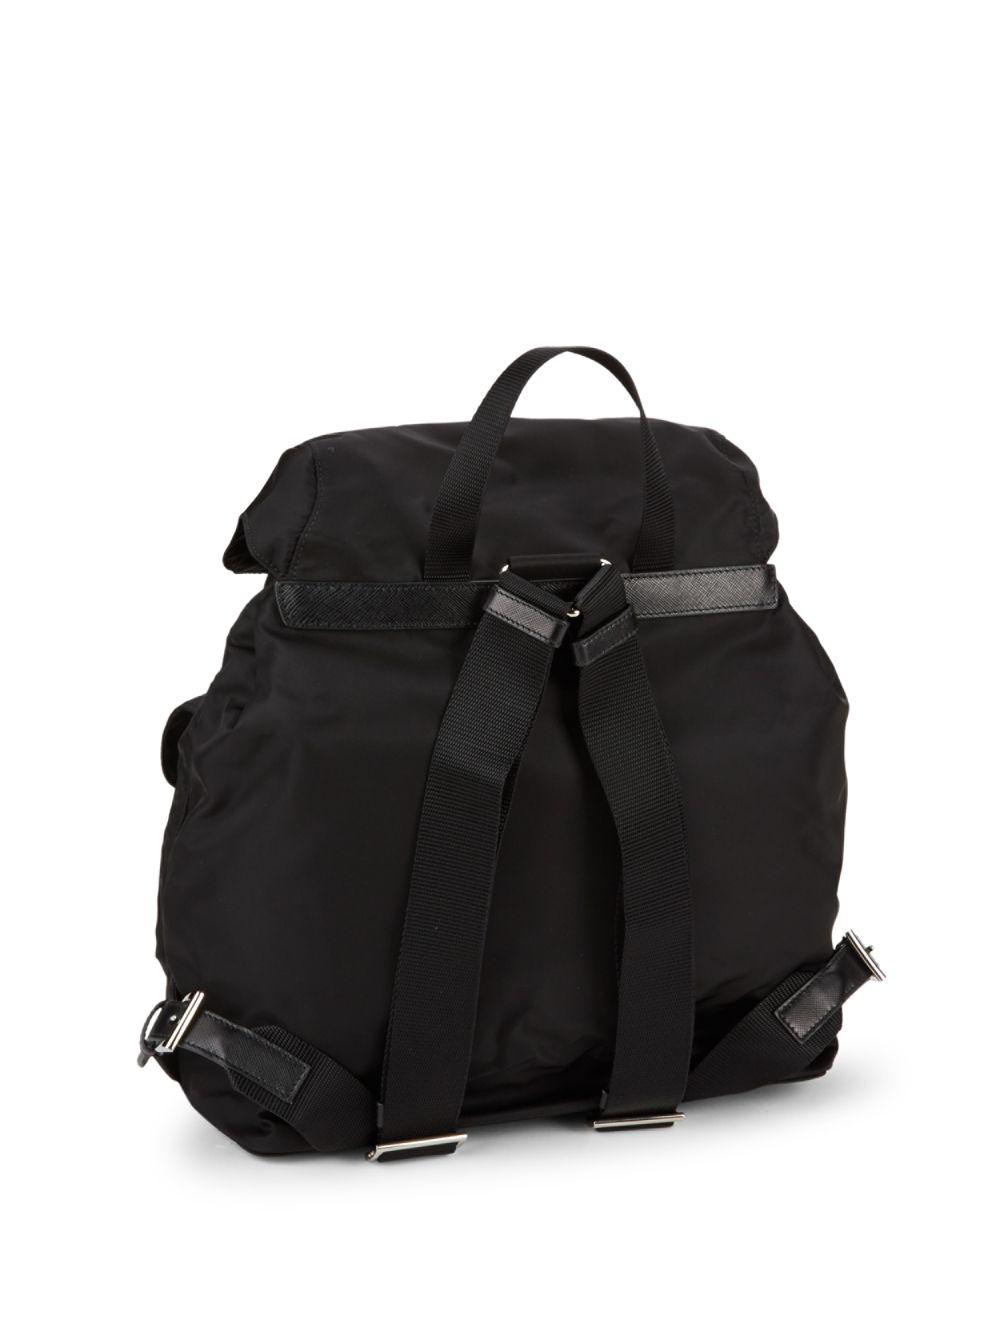 Prada Zaino Leather Backpack in Black - Lyst